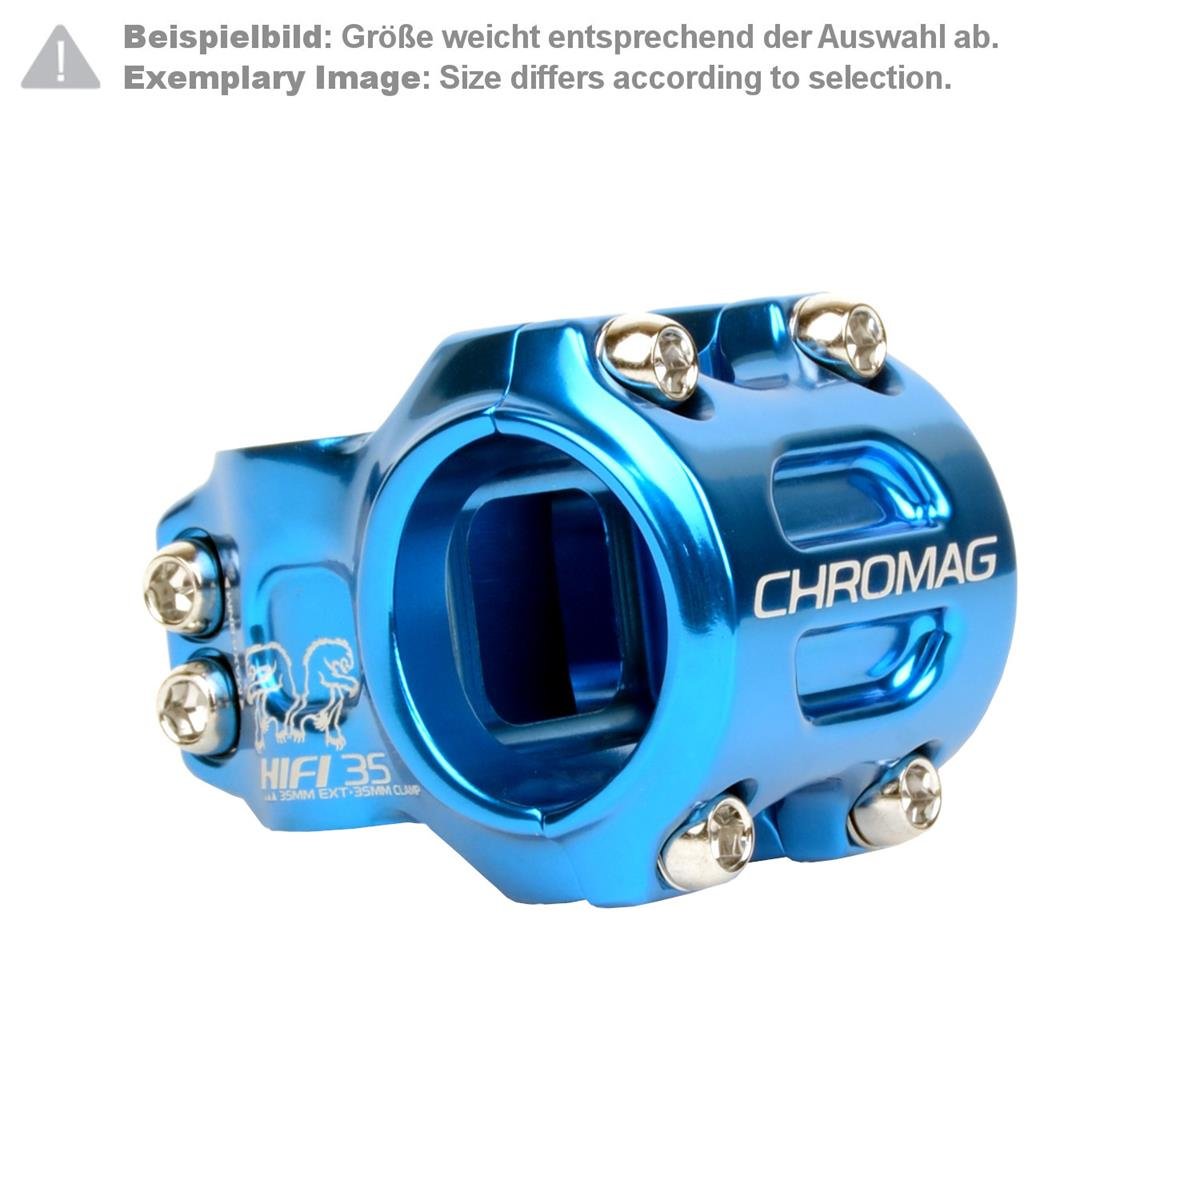 Chromag Attacco Manubrio MTB HIFI 35.0 mm, 35 mm Reach, Blu